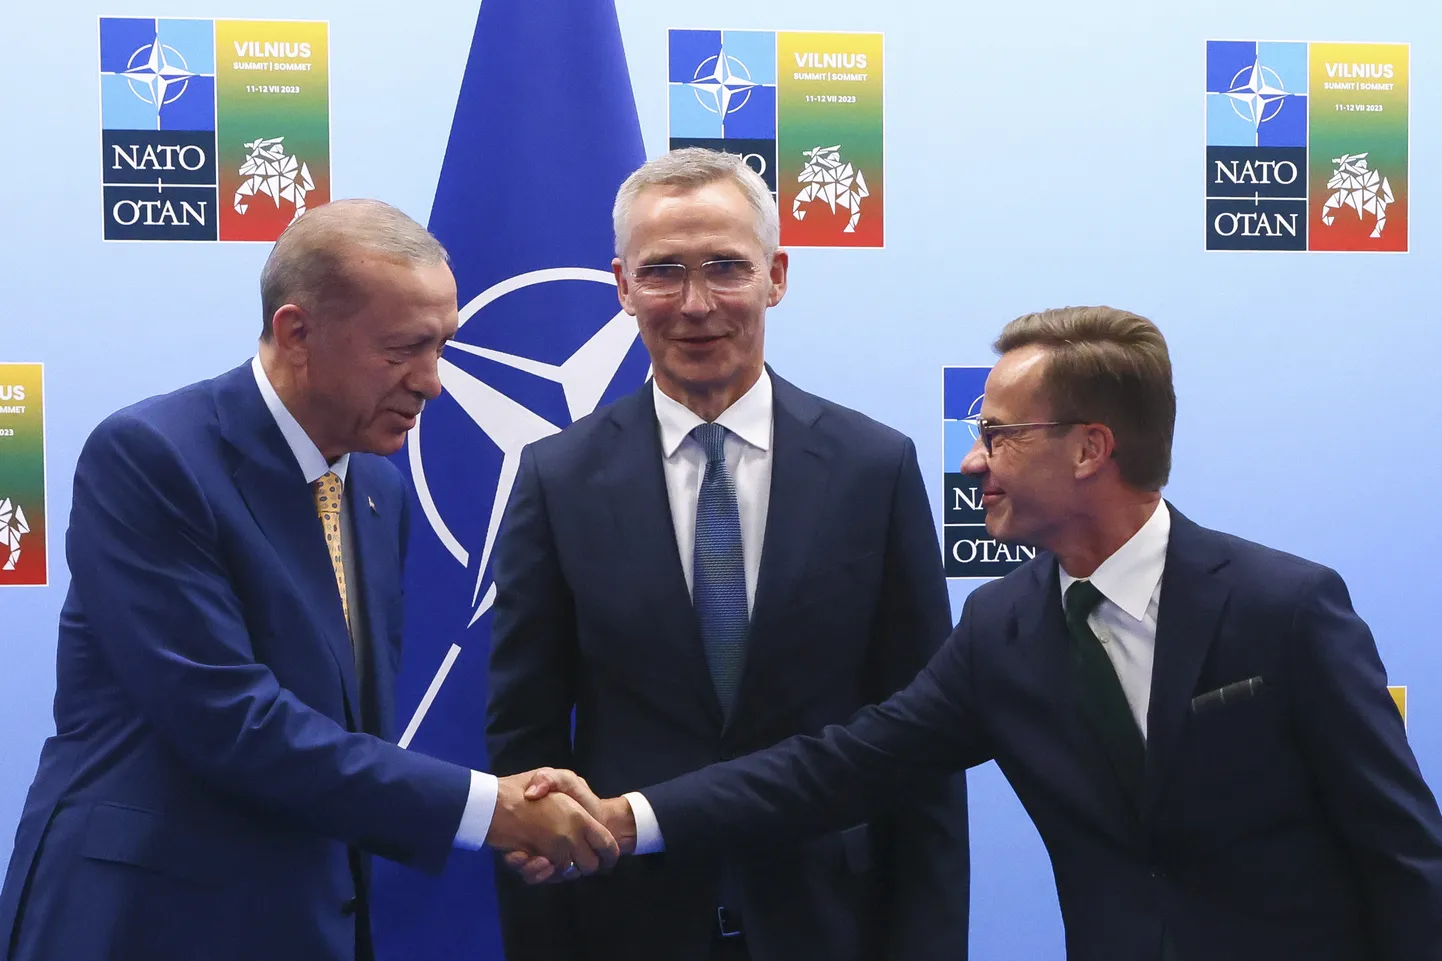 Накануне саммита НАТО Эрдоган встречается с премьер-министром Швеции Ульфом Кристерссоном и главой альянса Йенсом Столтенбергом.